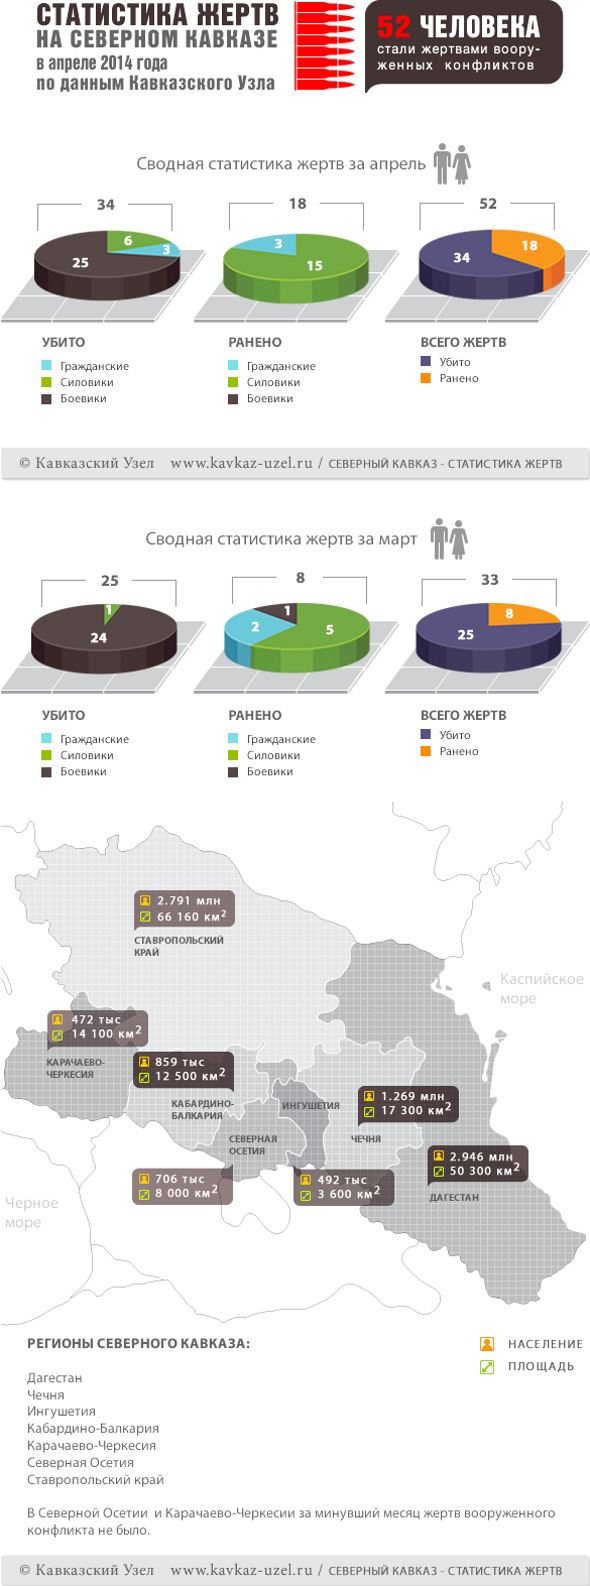 Инфографика. Статистика жертв на Северном Кавказе в апреле 2014 года по данным "Кавказского узла"